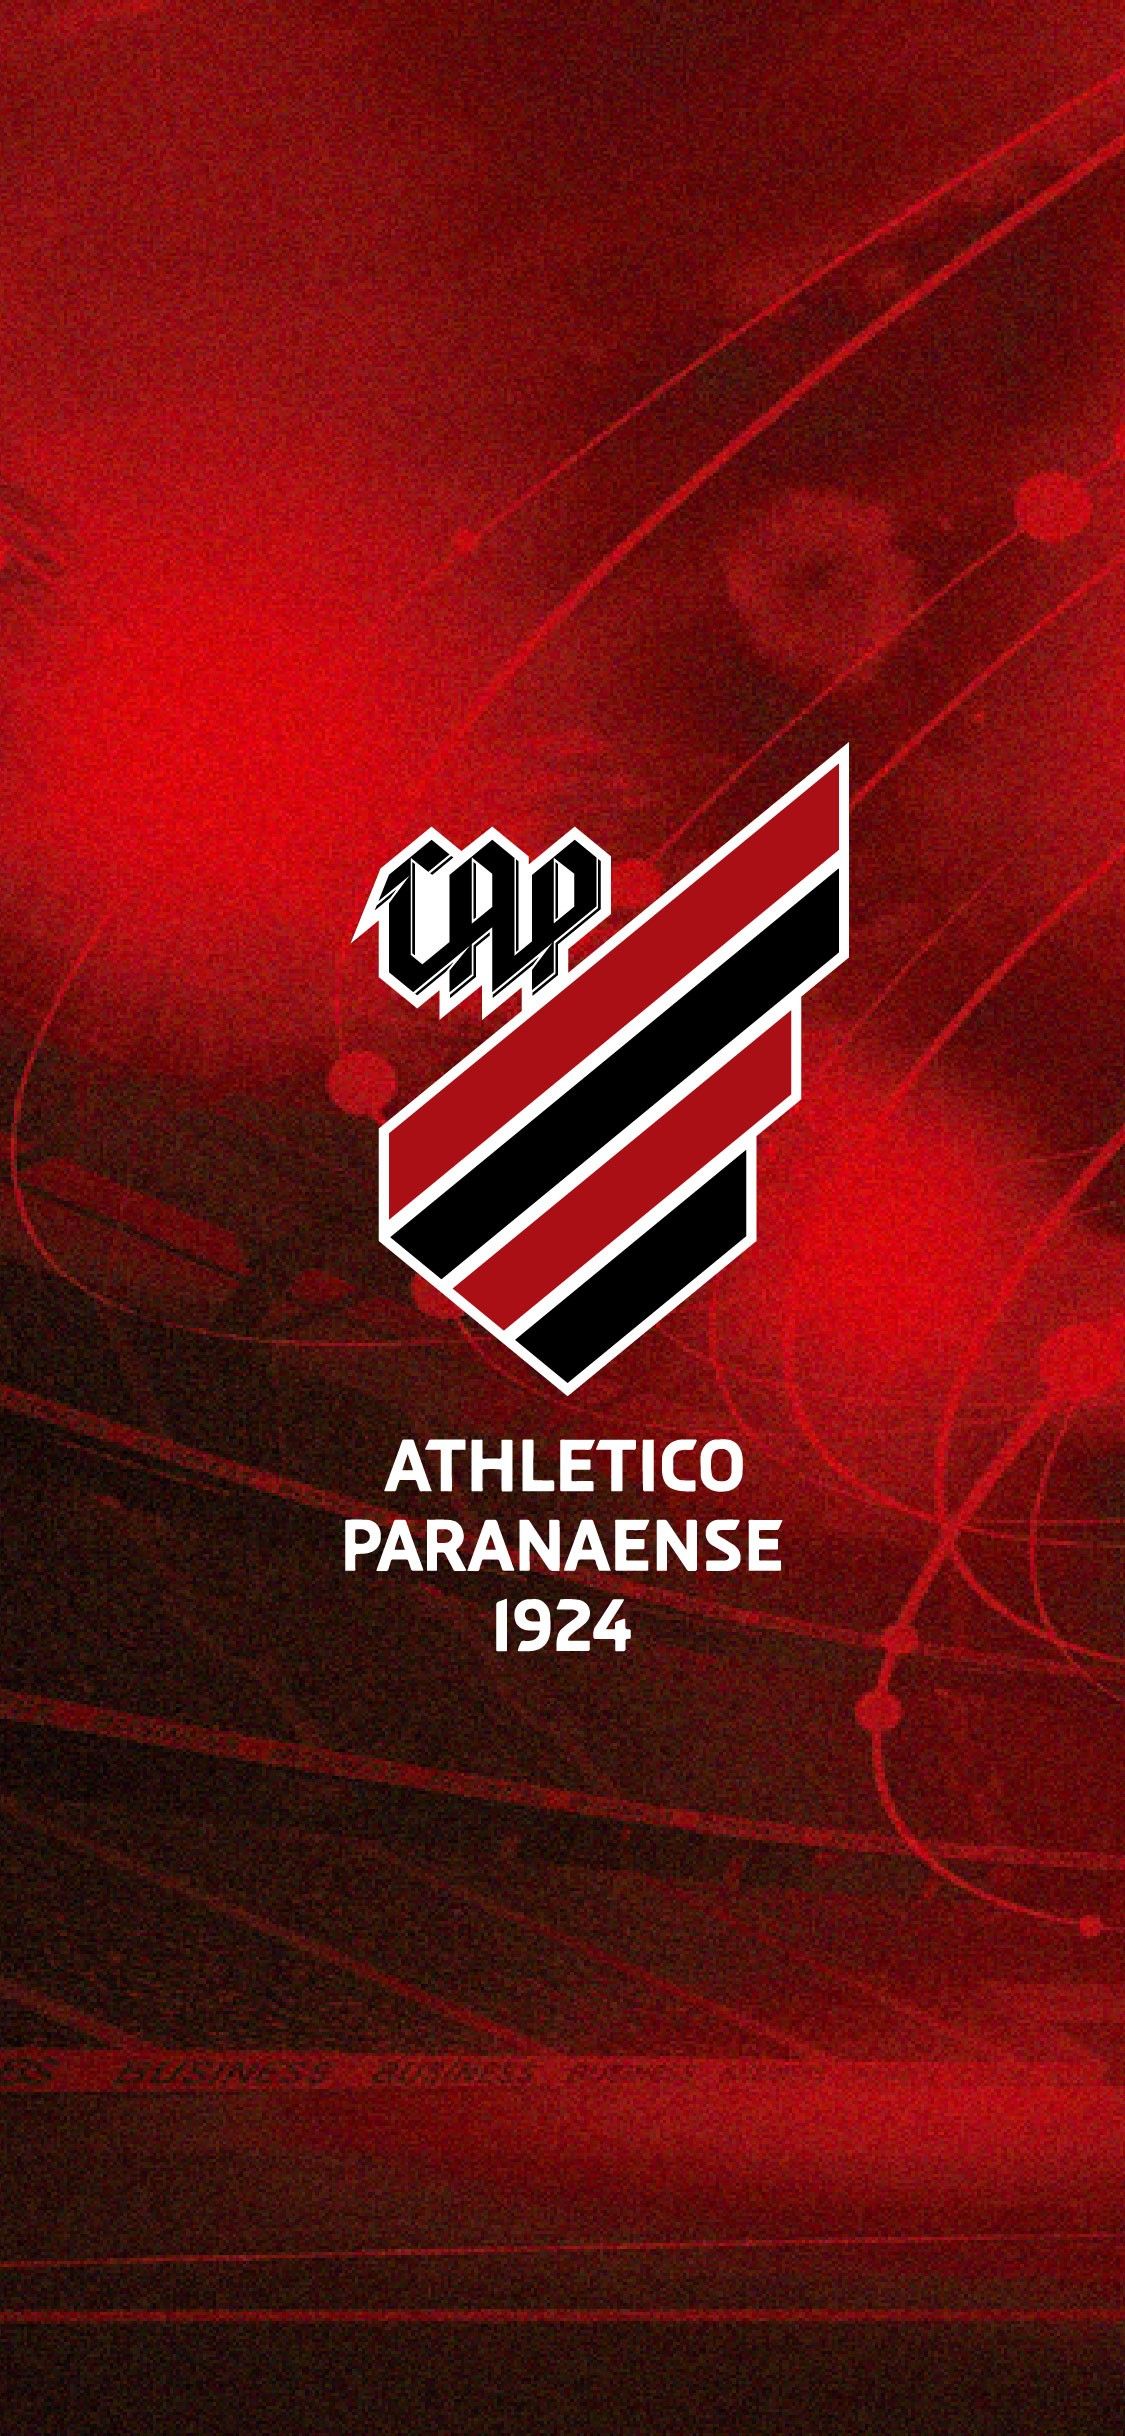 -Athletico Paranaense (Reprodução - Internet)-